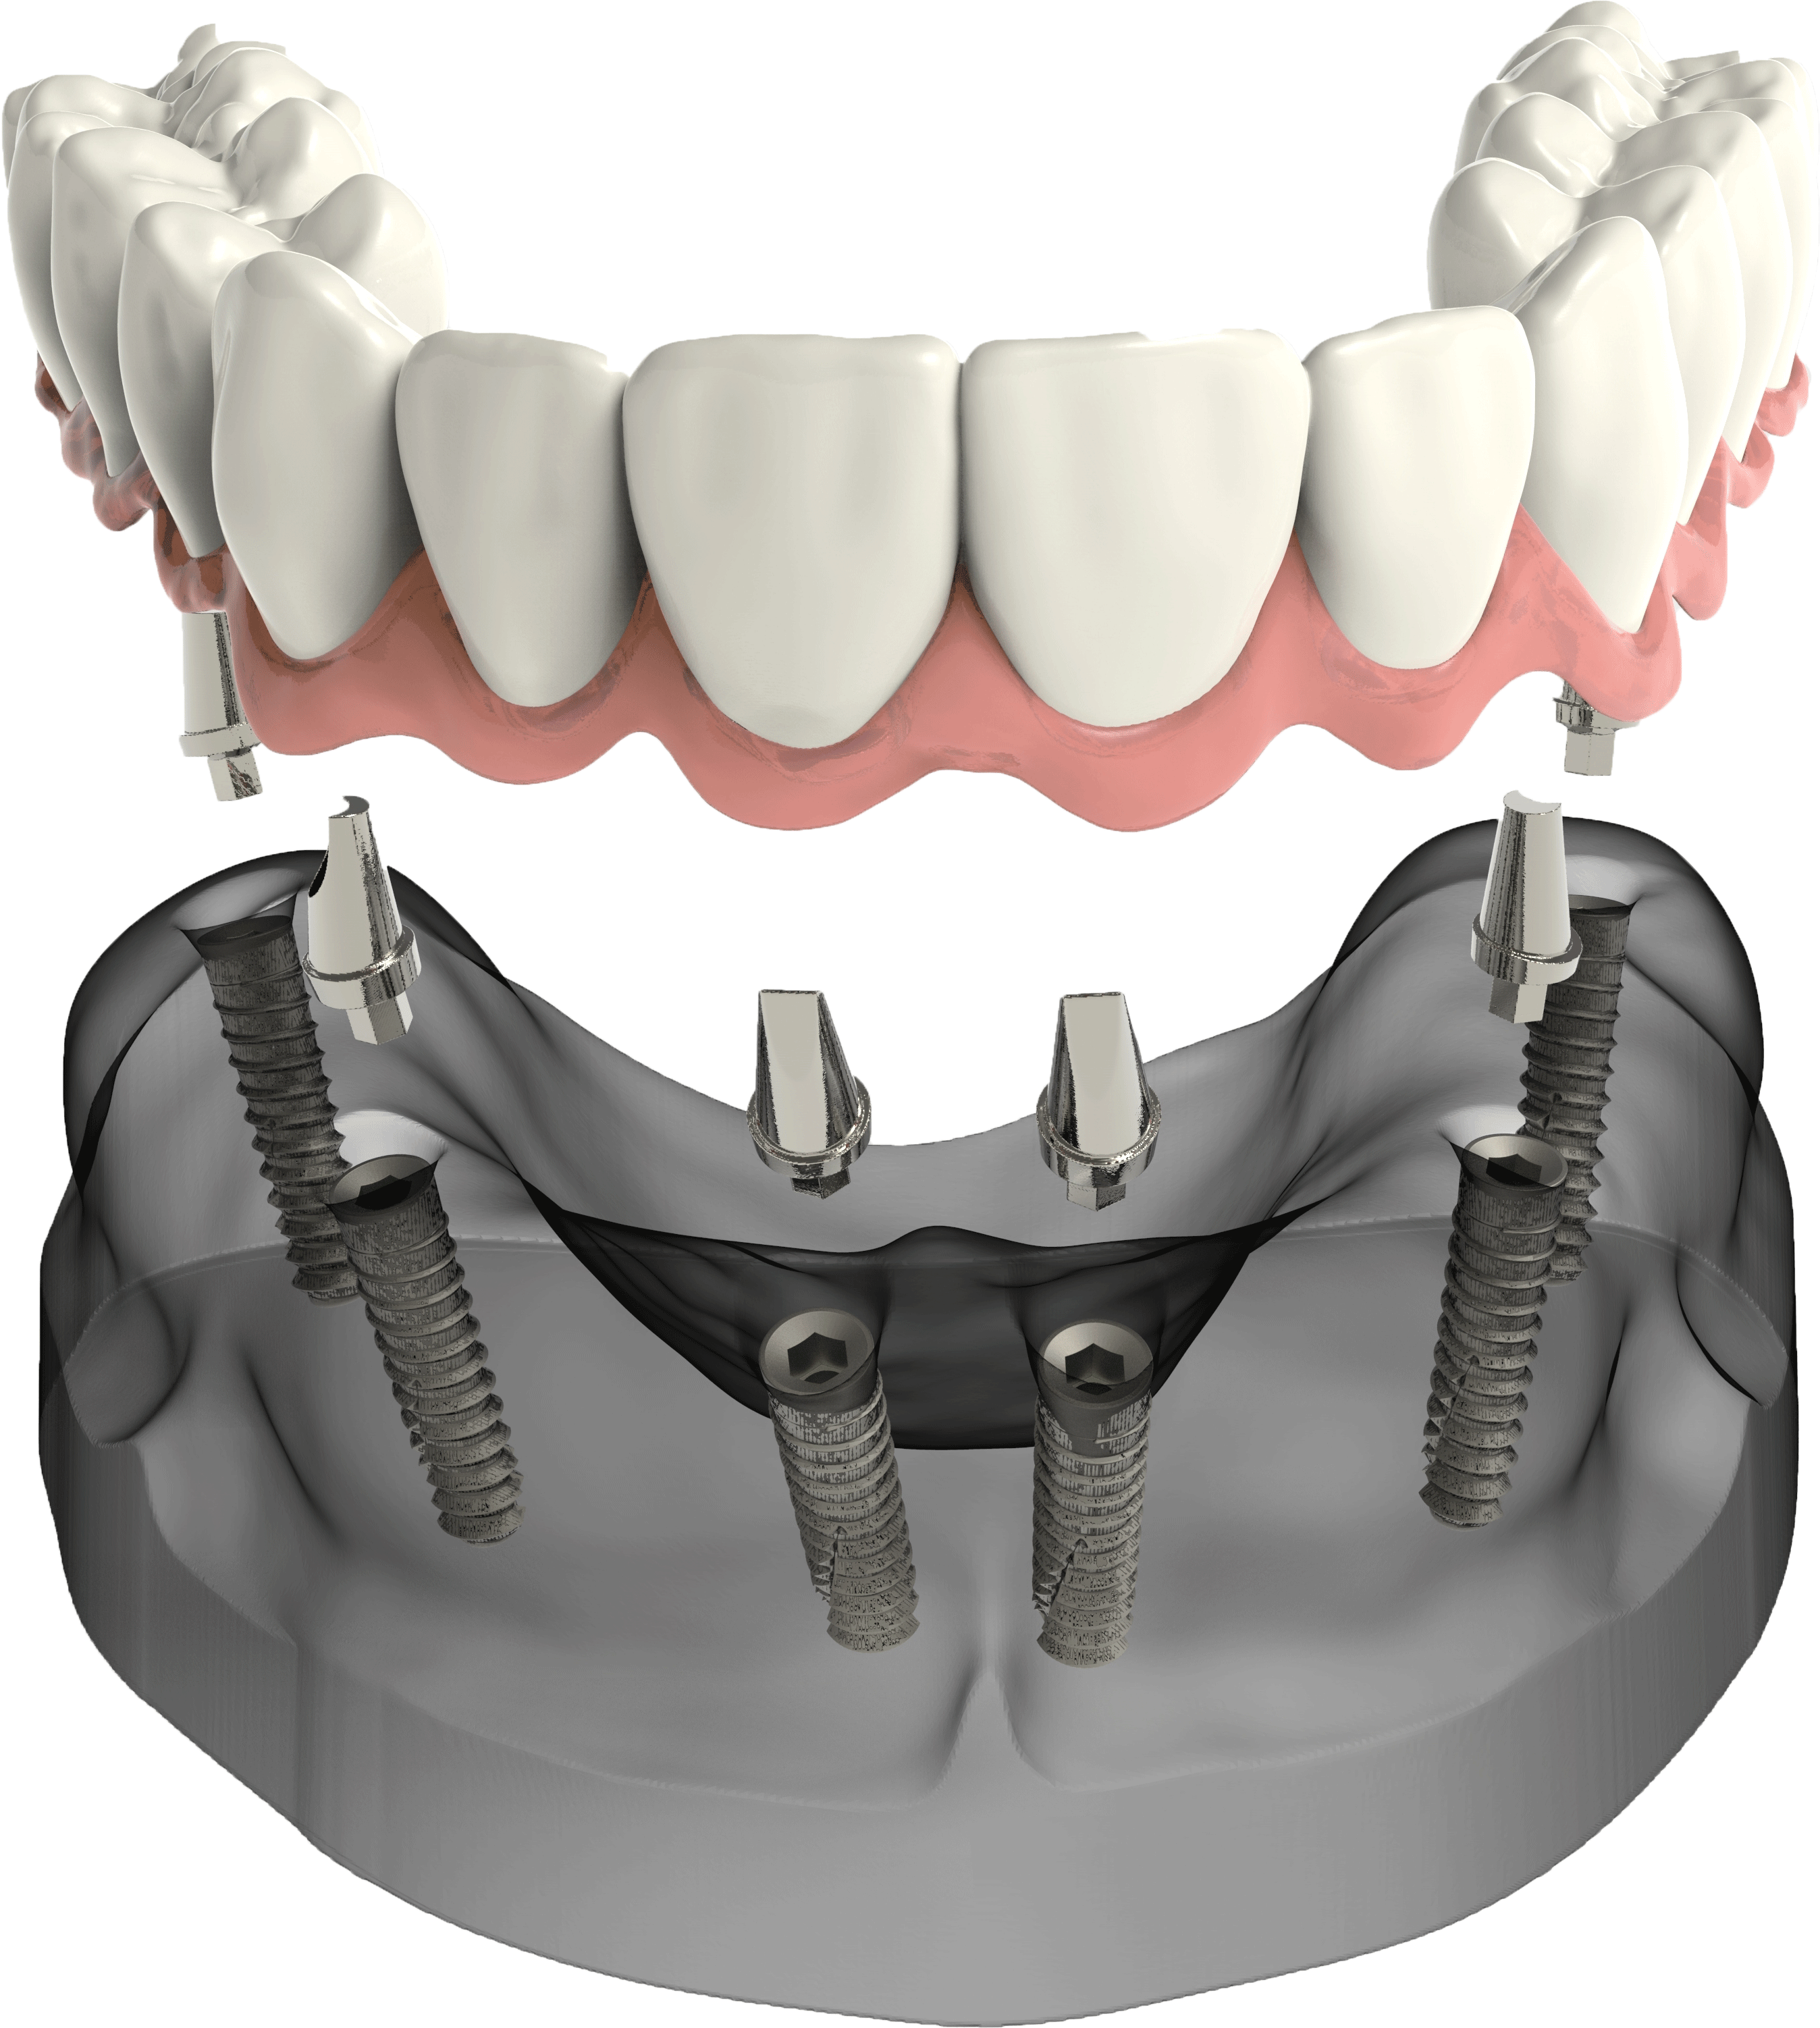 Имплантация зубов all on 4. Имплантологическая кассета Nobel полный набор для all on 4. Мостовидный протез на 6 имплантах. Имплантация зубов all on 6